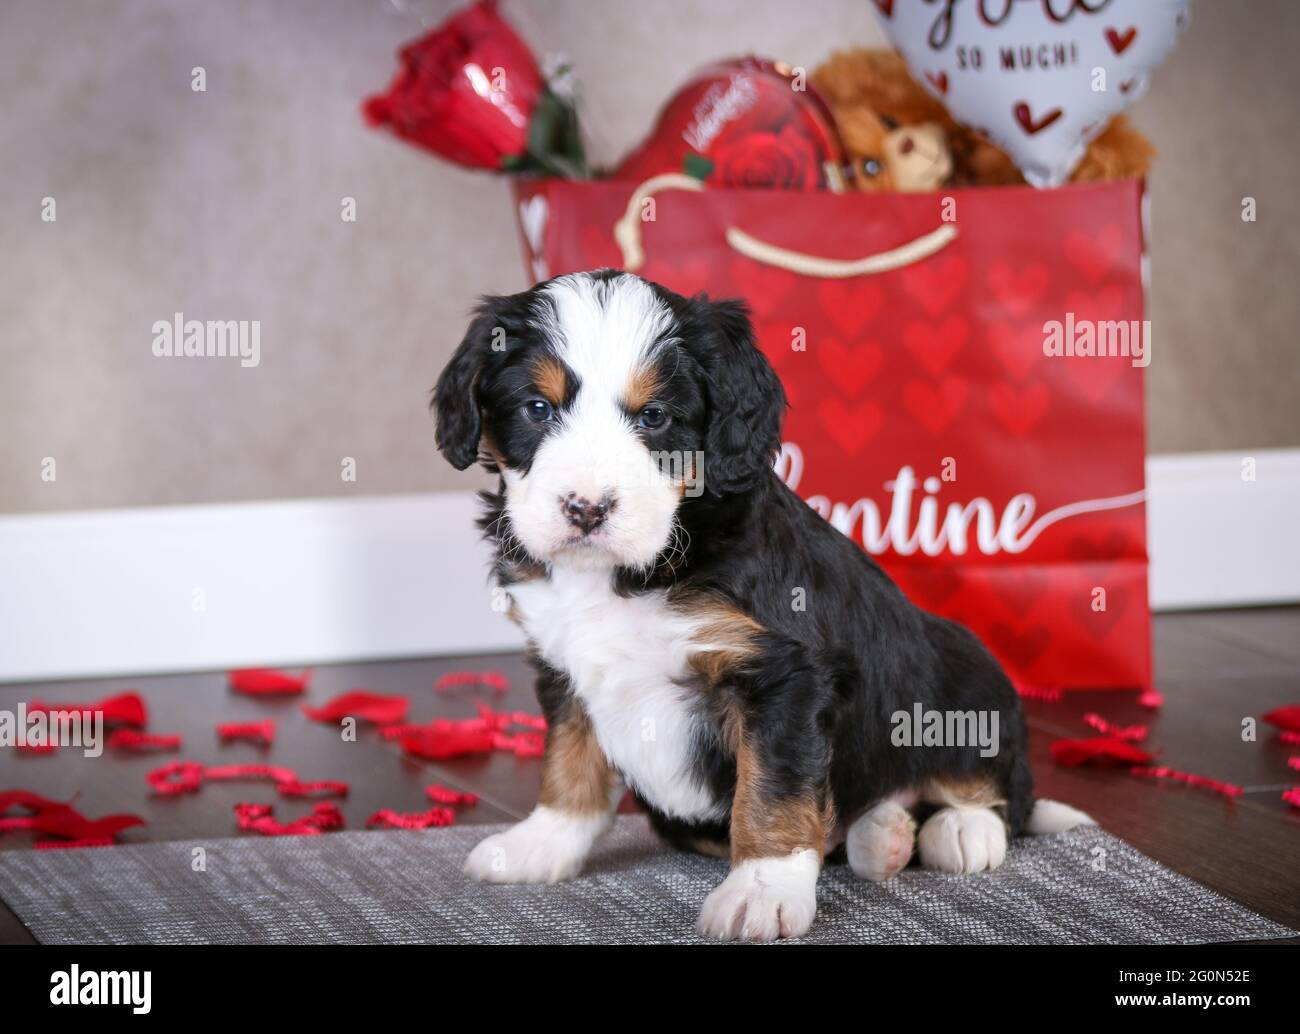 F1 semanas de edad 5 Mini perrito de Bernedodle sentado en el piso frente a una bolsa de San Valentín con pedales de rosa, perrito mirando la cámara Foto de stock